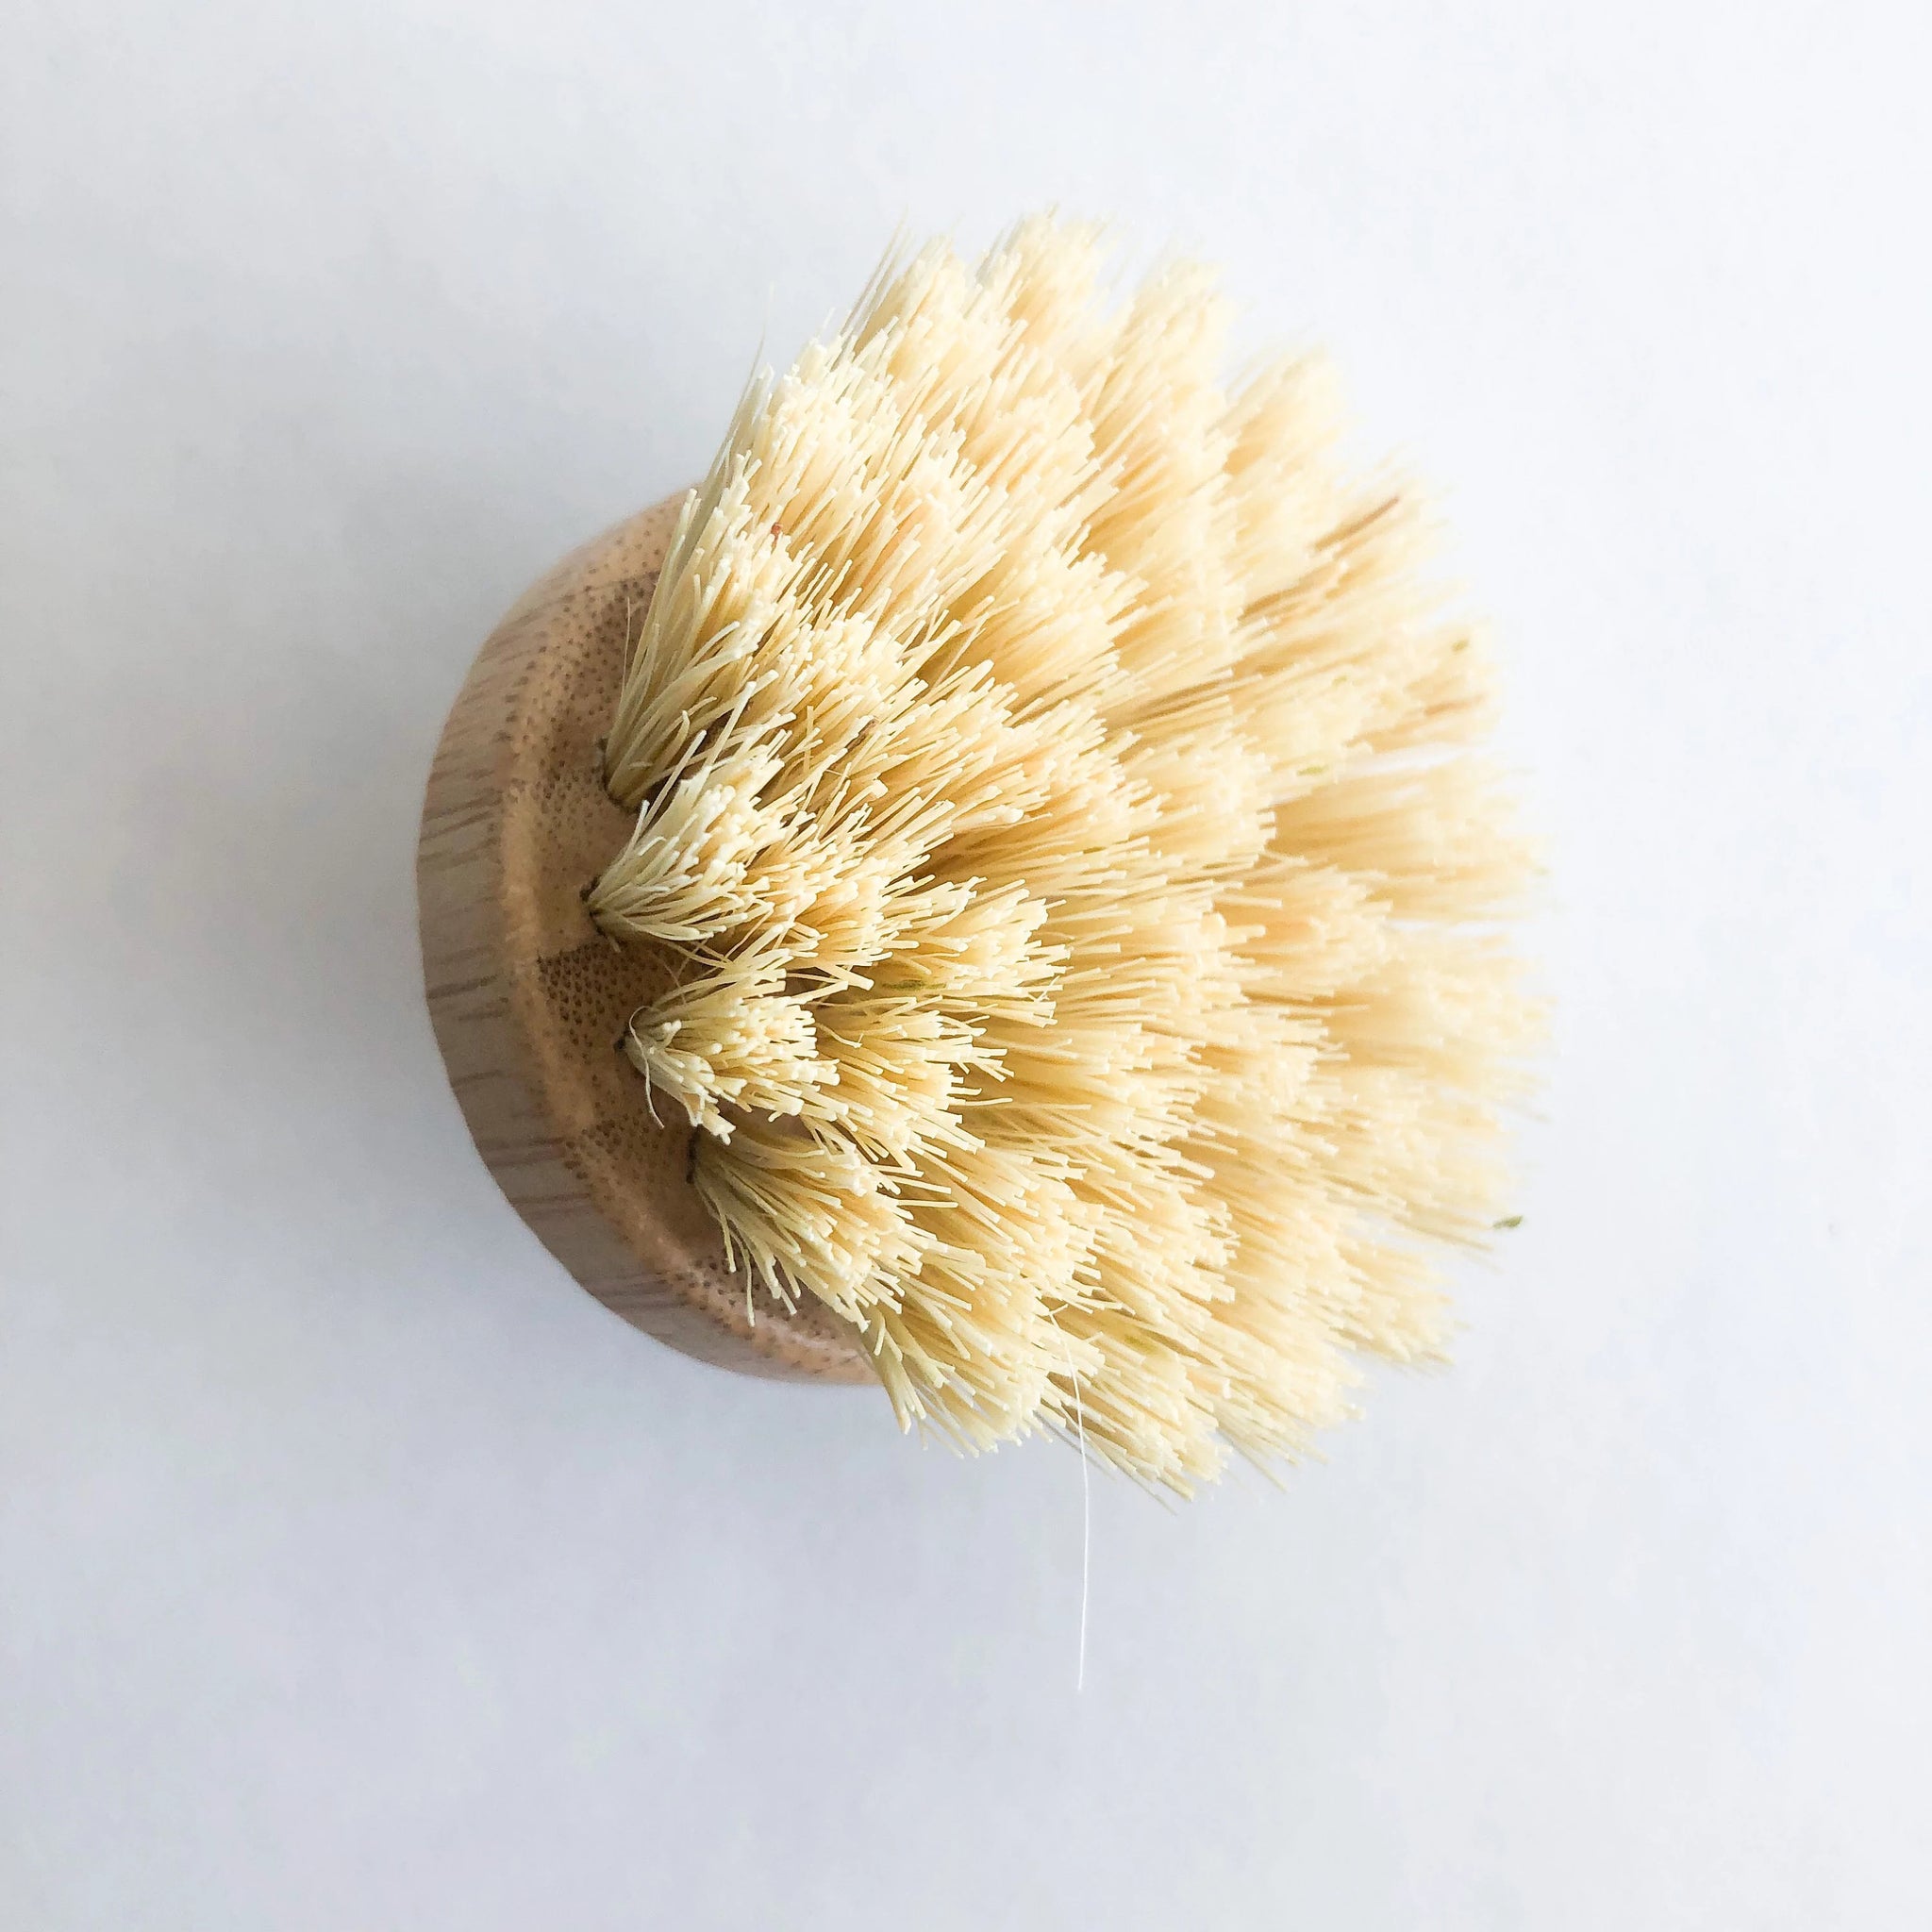 Multipurpose Bamboo Dish Brushes & Body Brushes EKOH-STORE